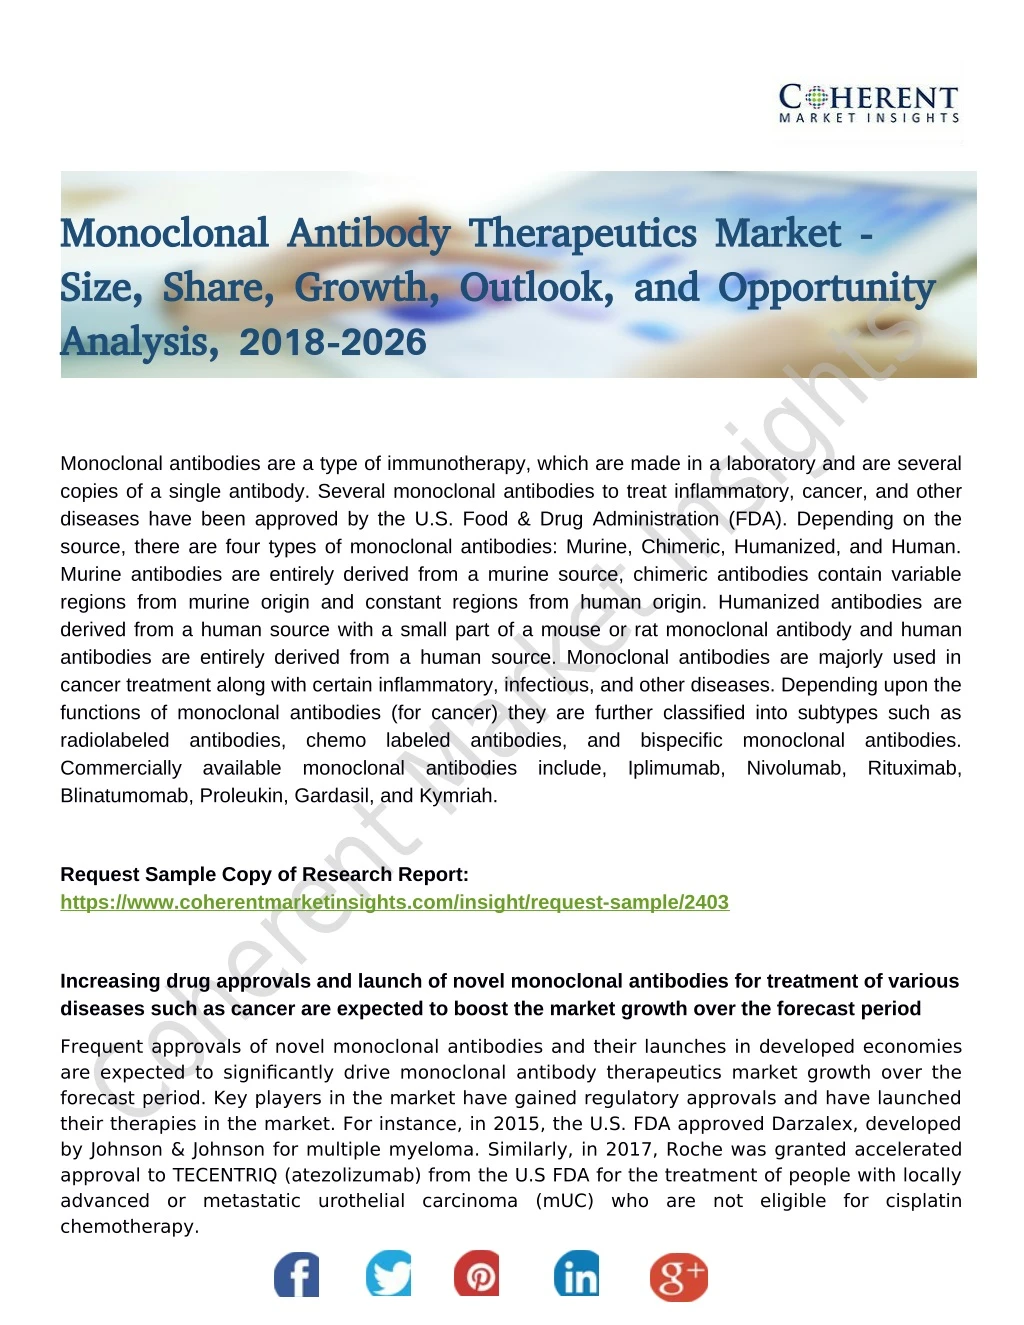 monoclonal antibody therapeutics market